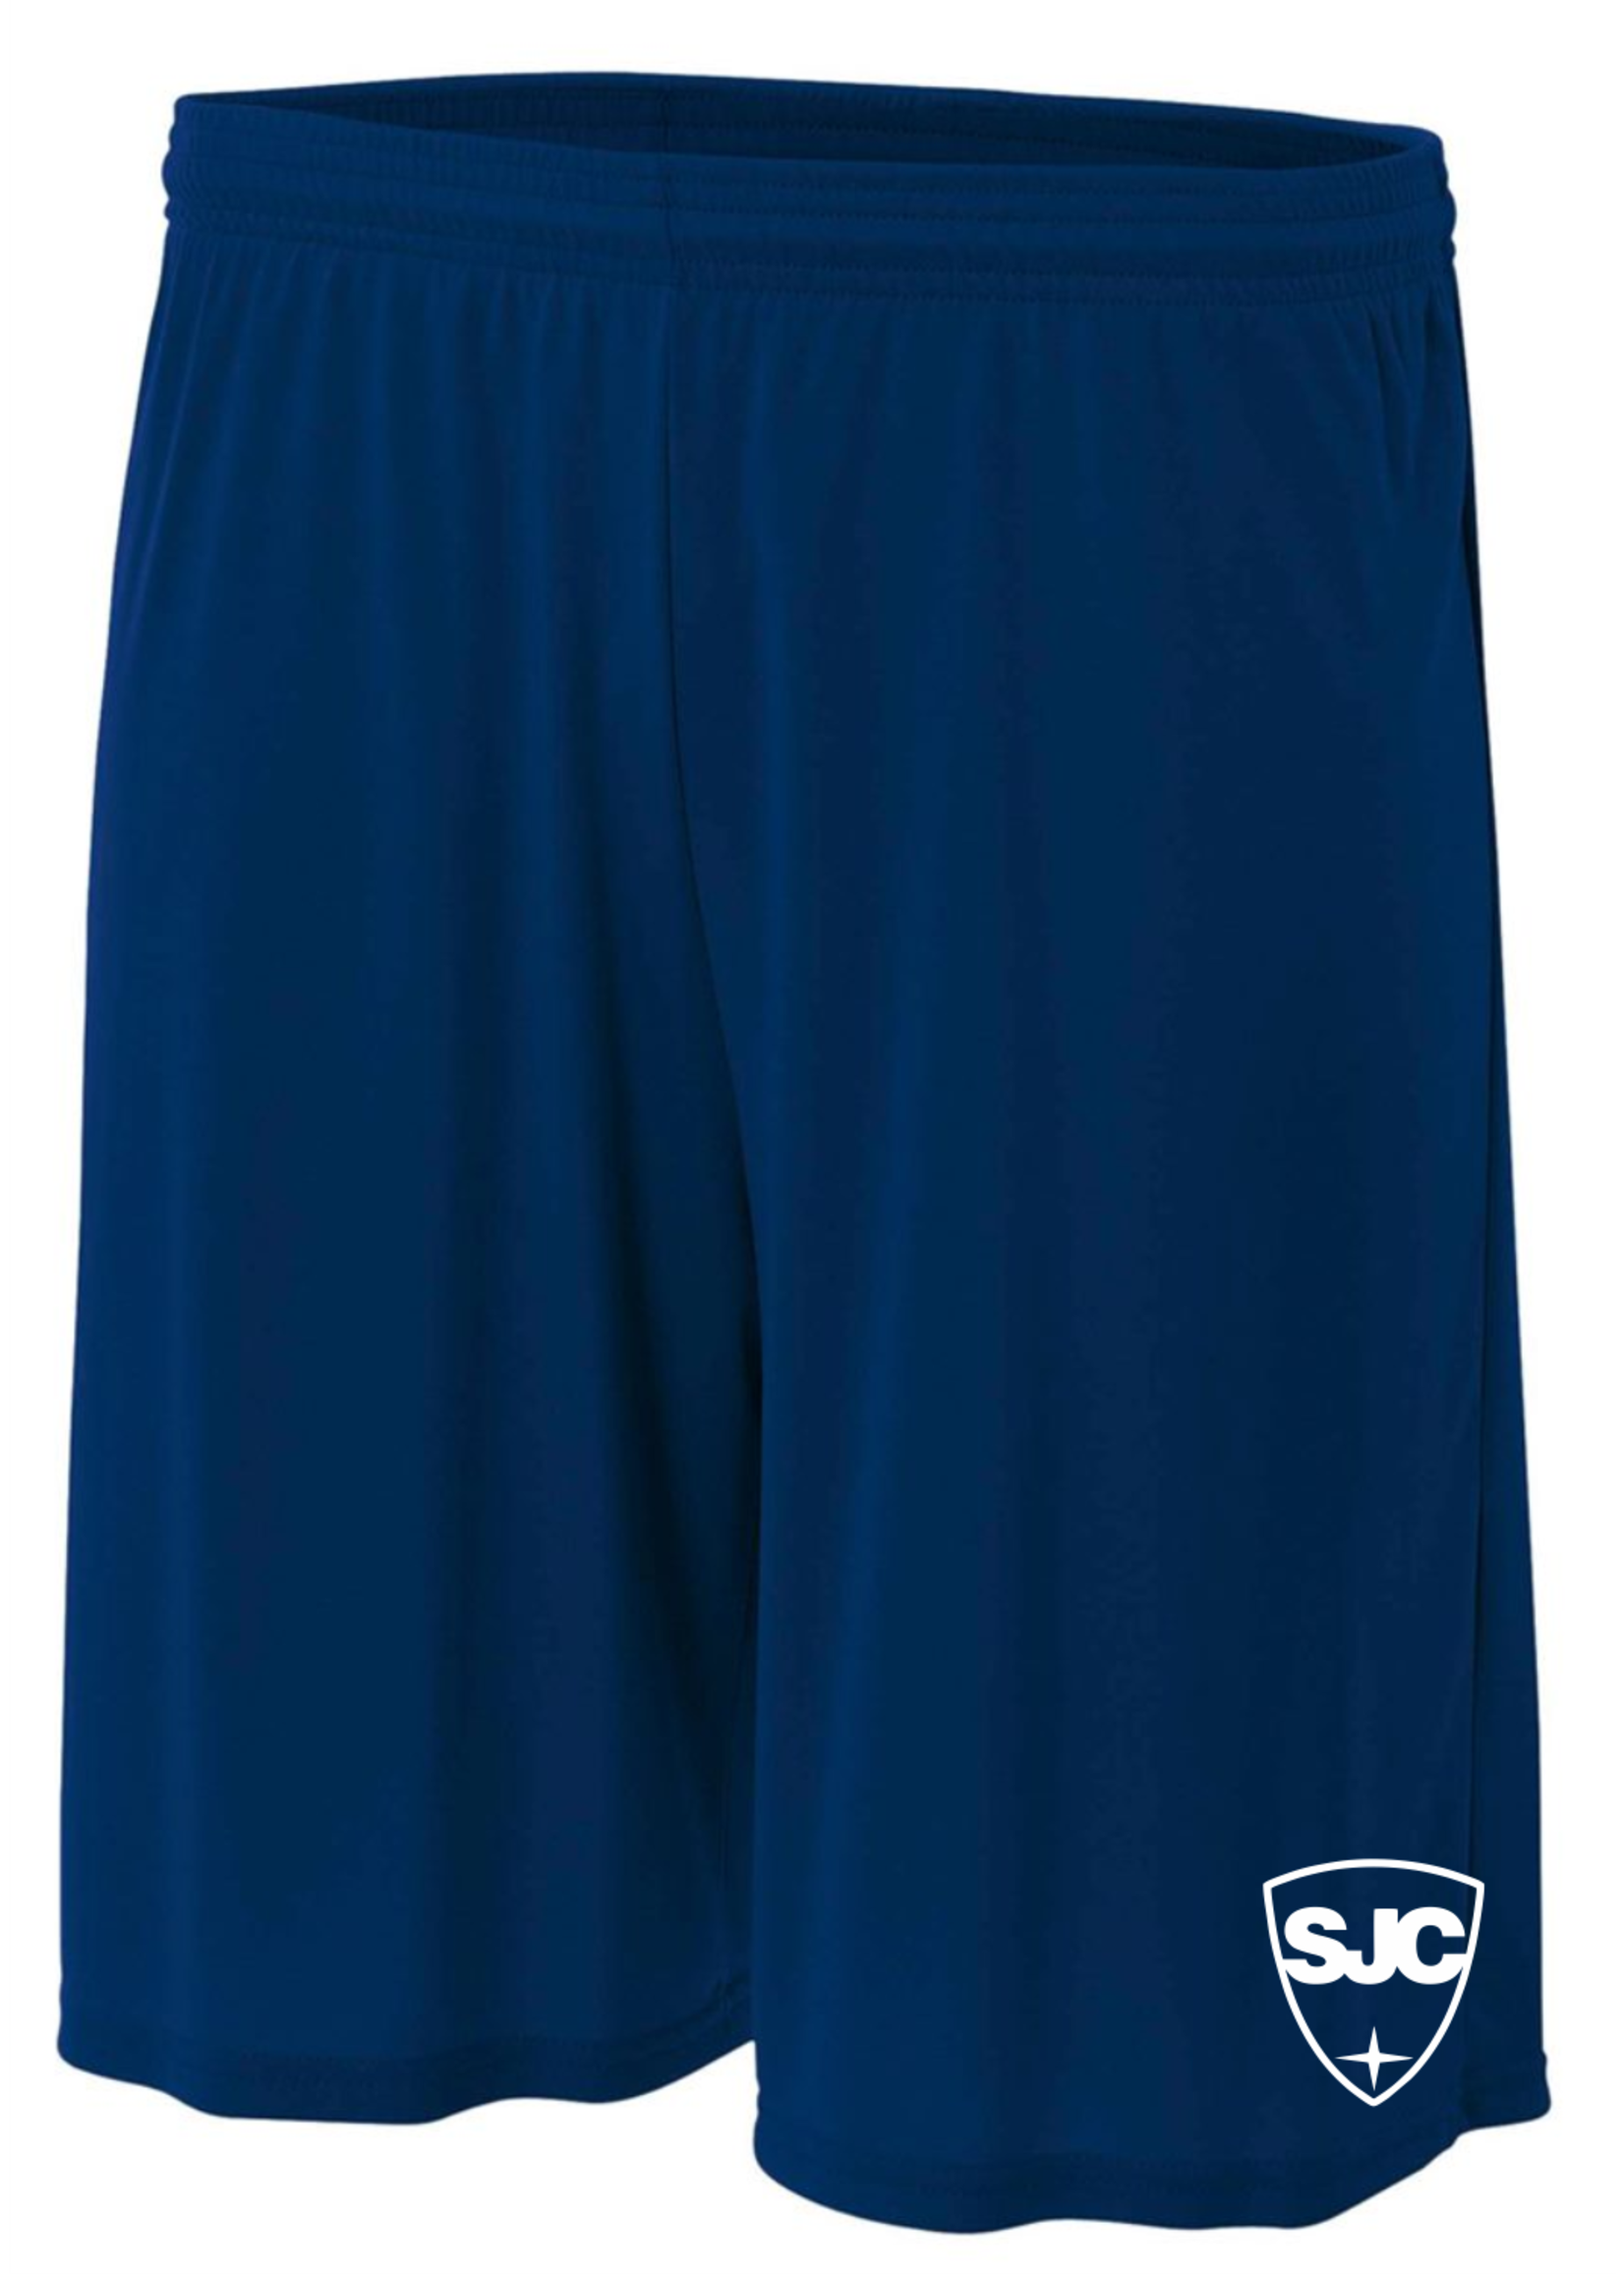 SJC Navy Dry Fit Shorts